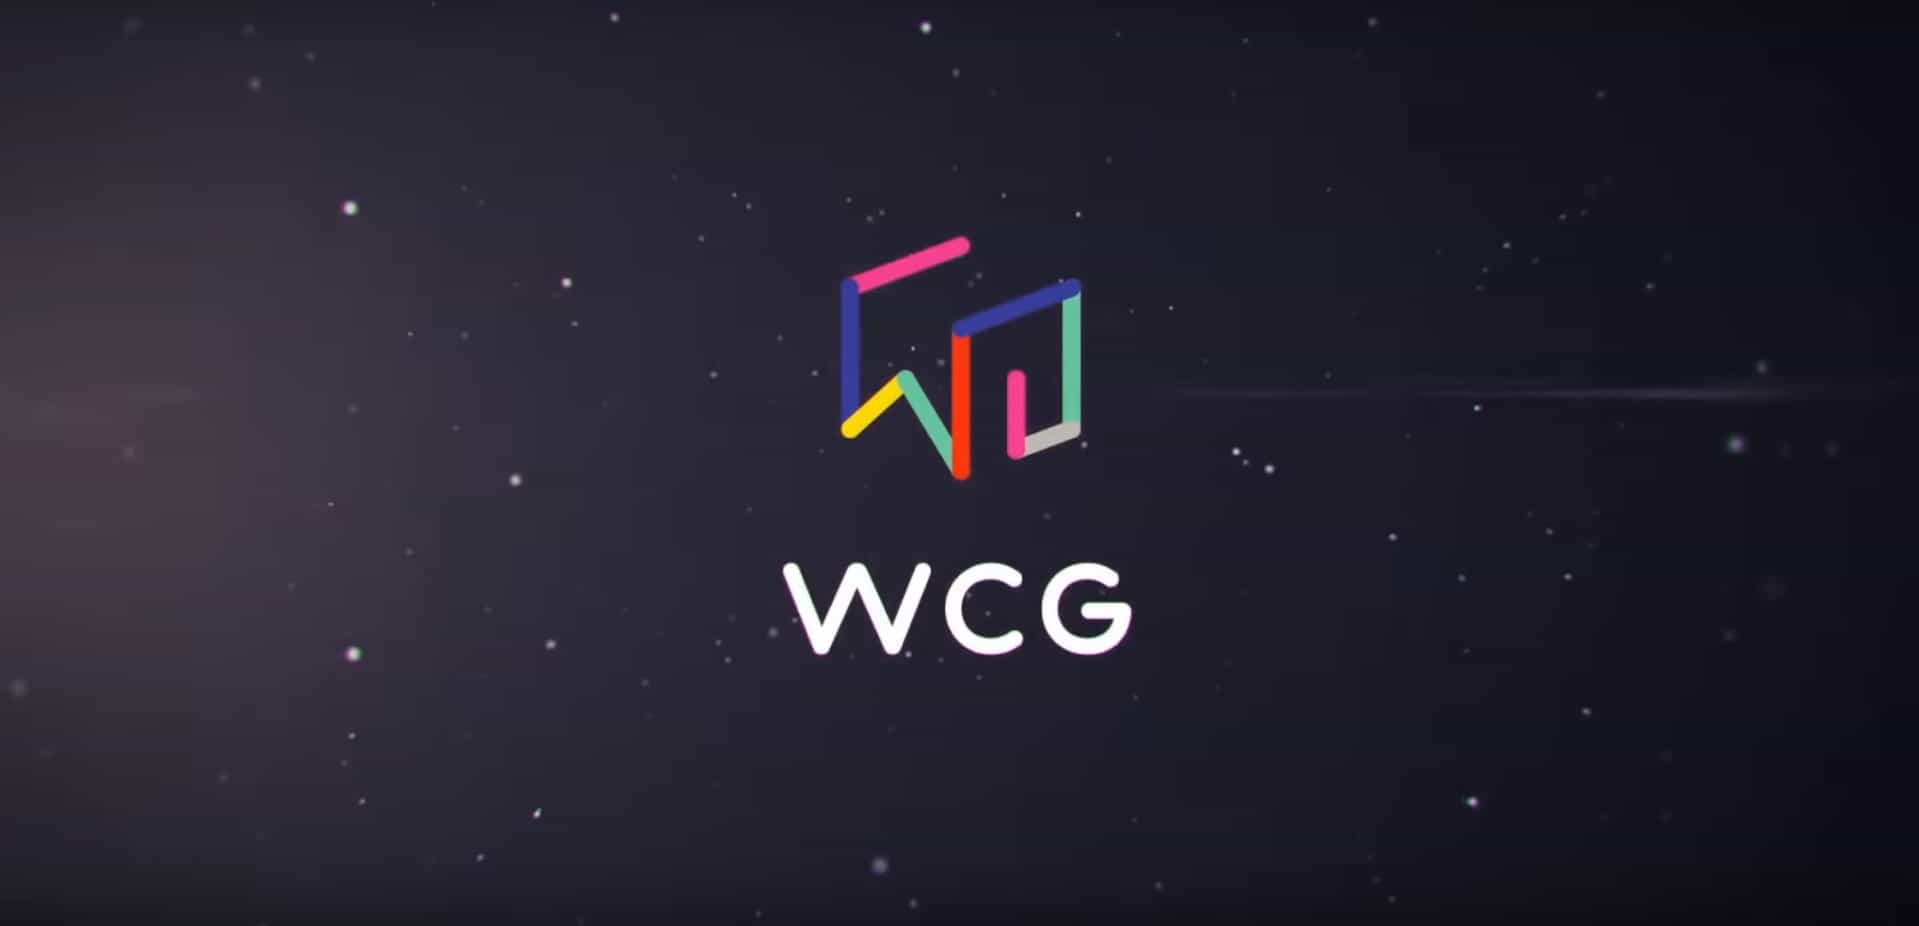 عودة بطولة رياضة الكترونية ضخمة WCG 2019 esports tournament return games announced